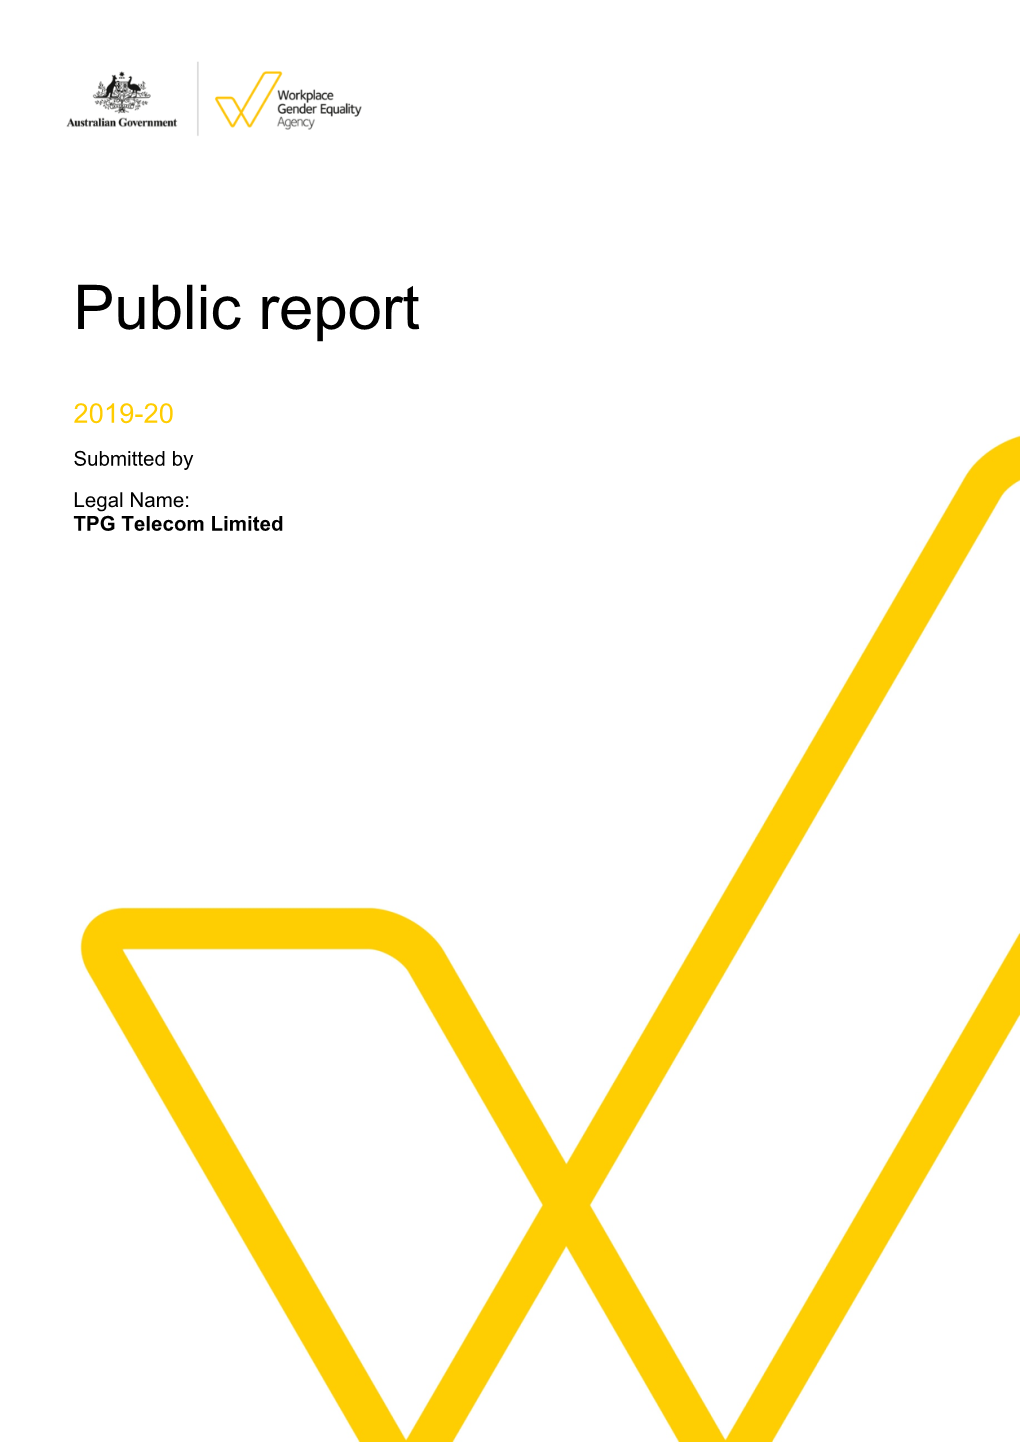 Public Report